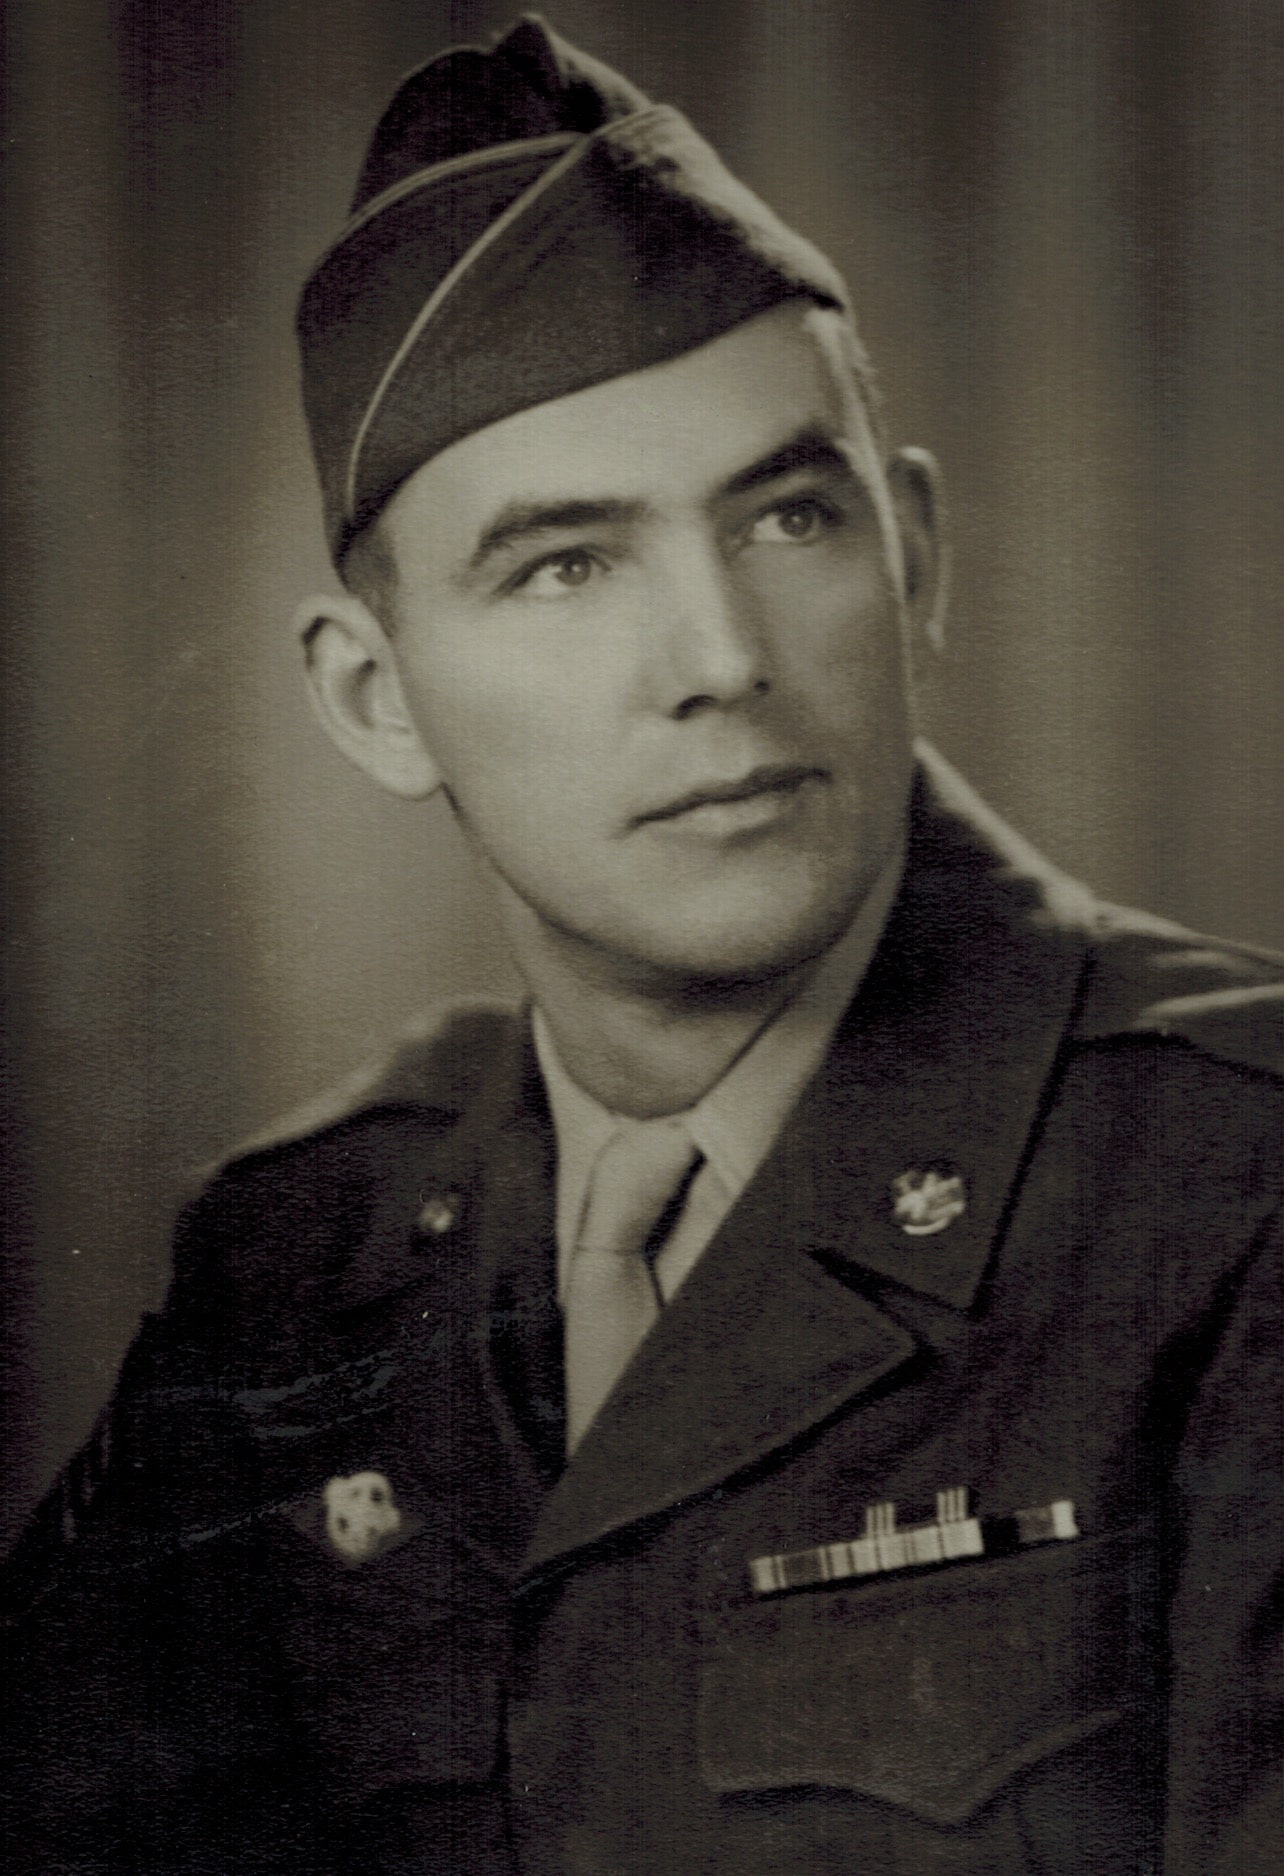 Vintage William M. in World War 2.